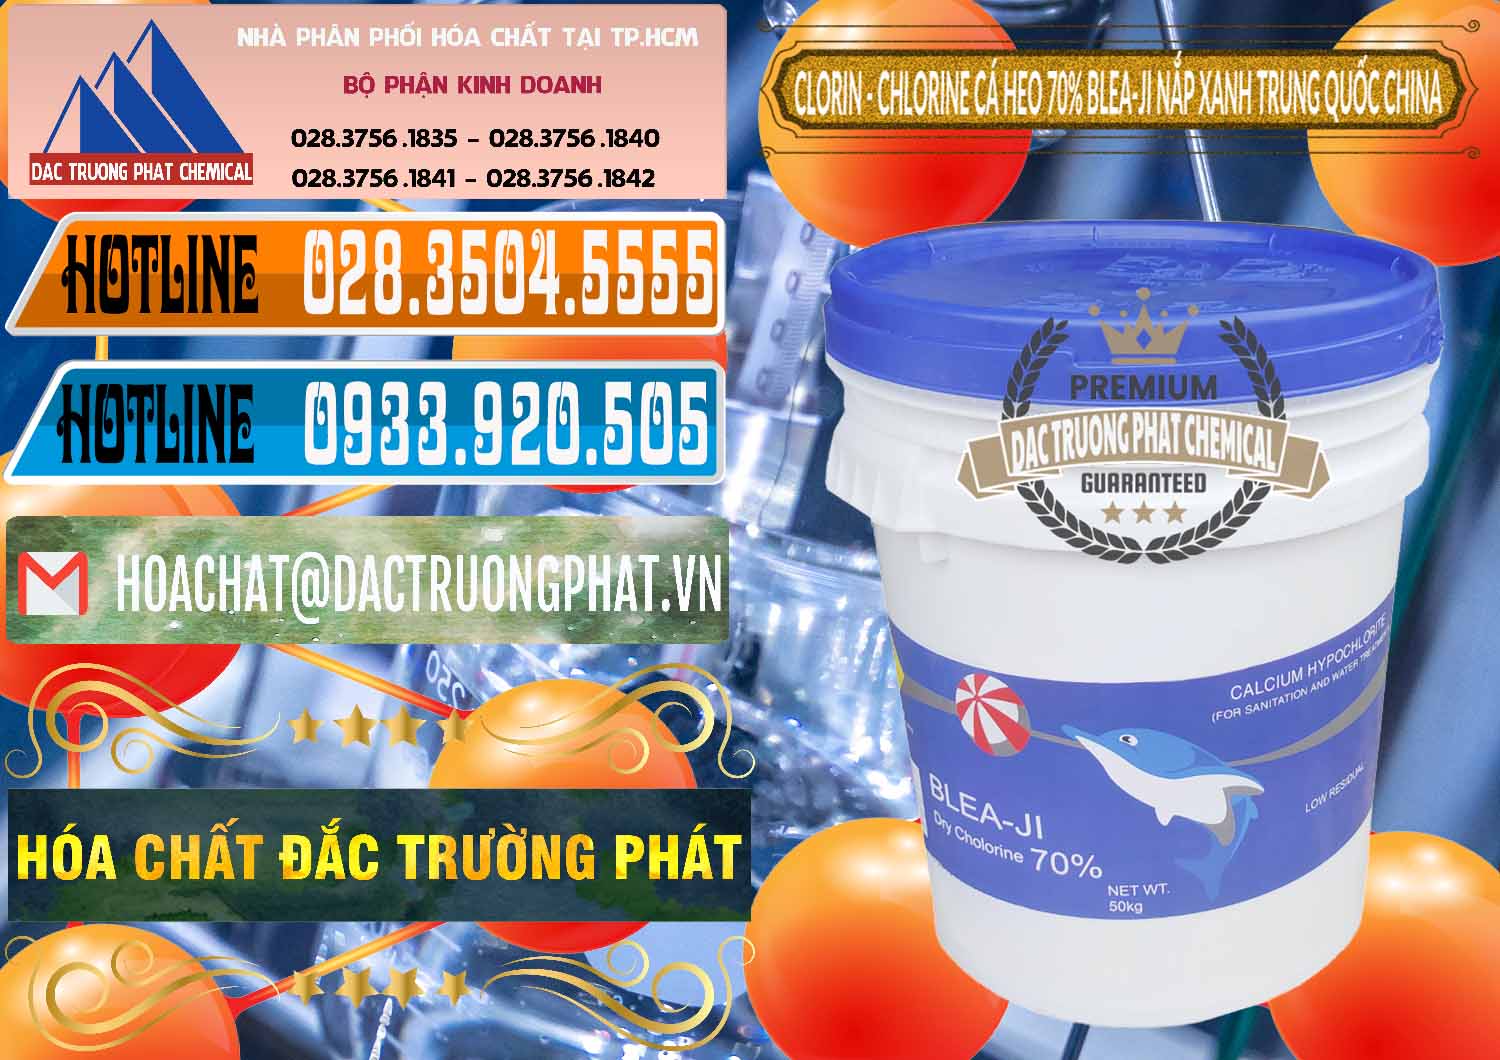 Chuyên bán ( phân phối ) Clorin - Chlorine Cá Heo 70% Cá Heo Blea-Ji Thùng Tròn Nắp Xanh Trung Quốc China - 0208 - Cung cấp & phân phối hóa chất tại TP.HCM - stmp.net